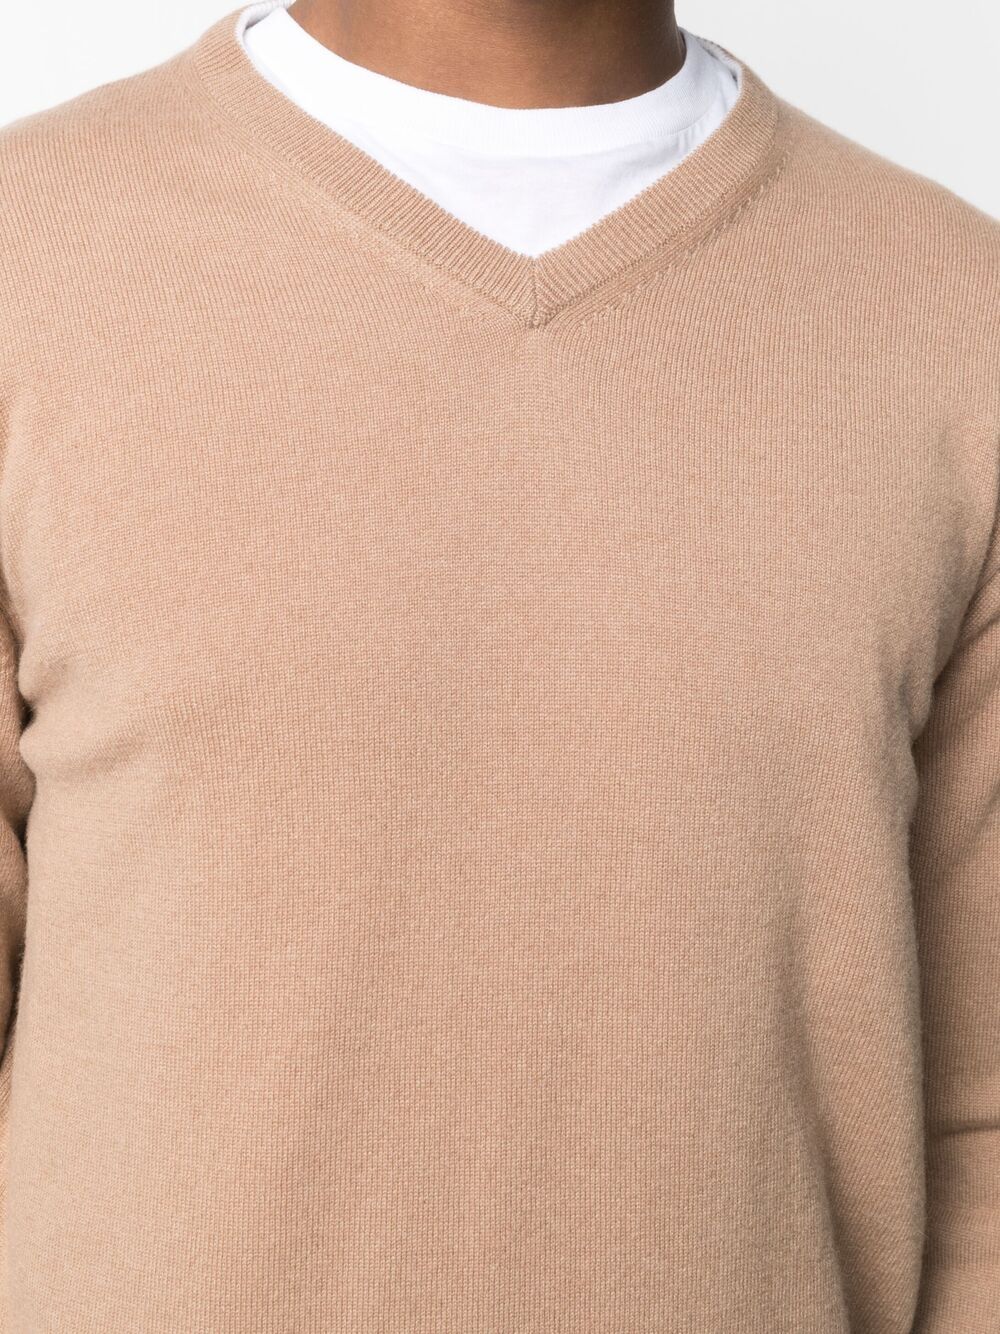 фото Eleventy кашемировый свитер с v-образным вырезом